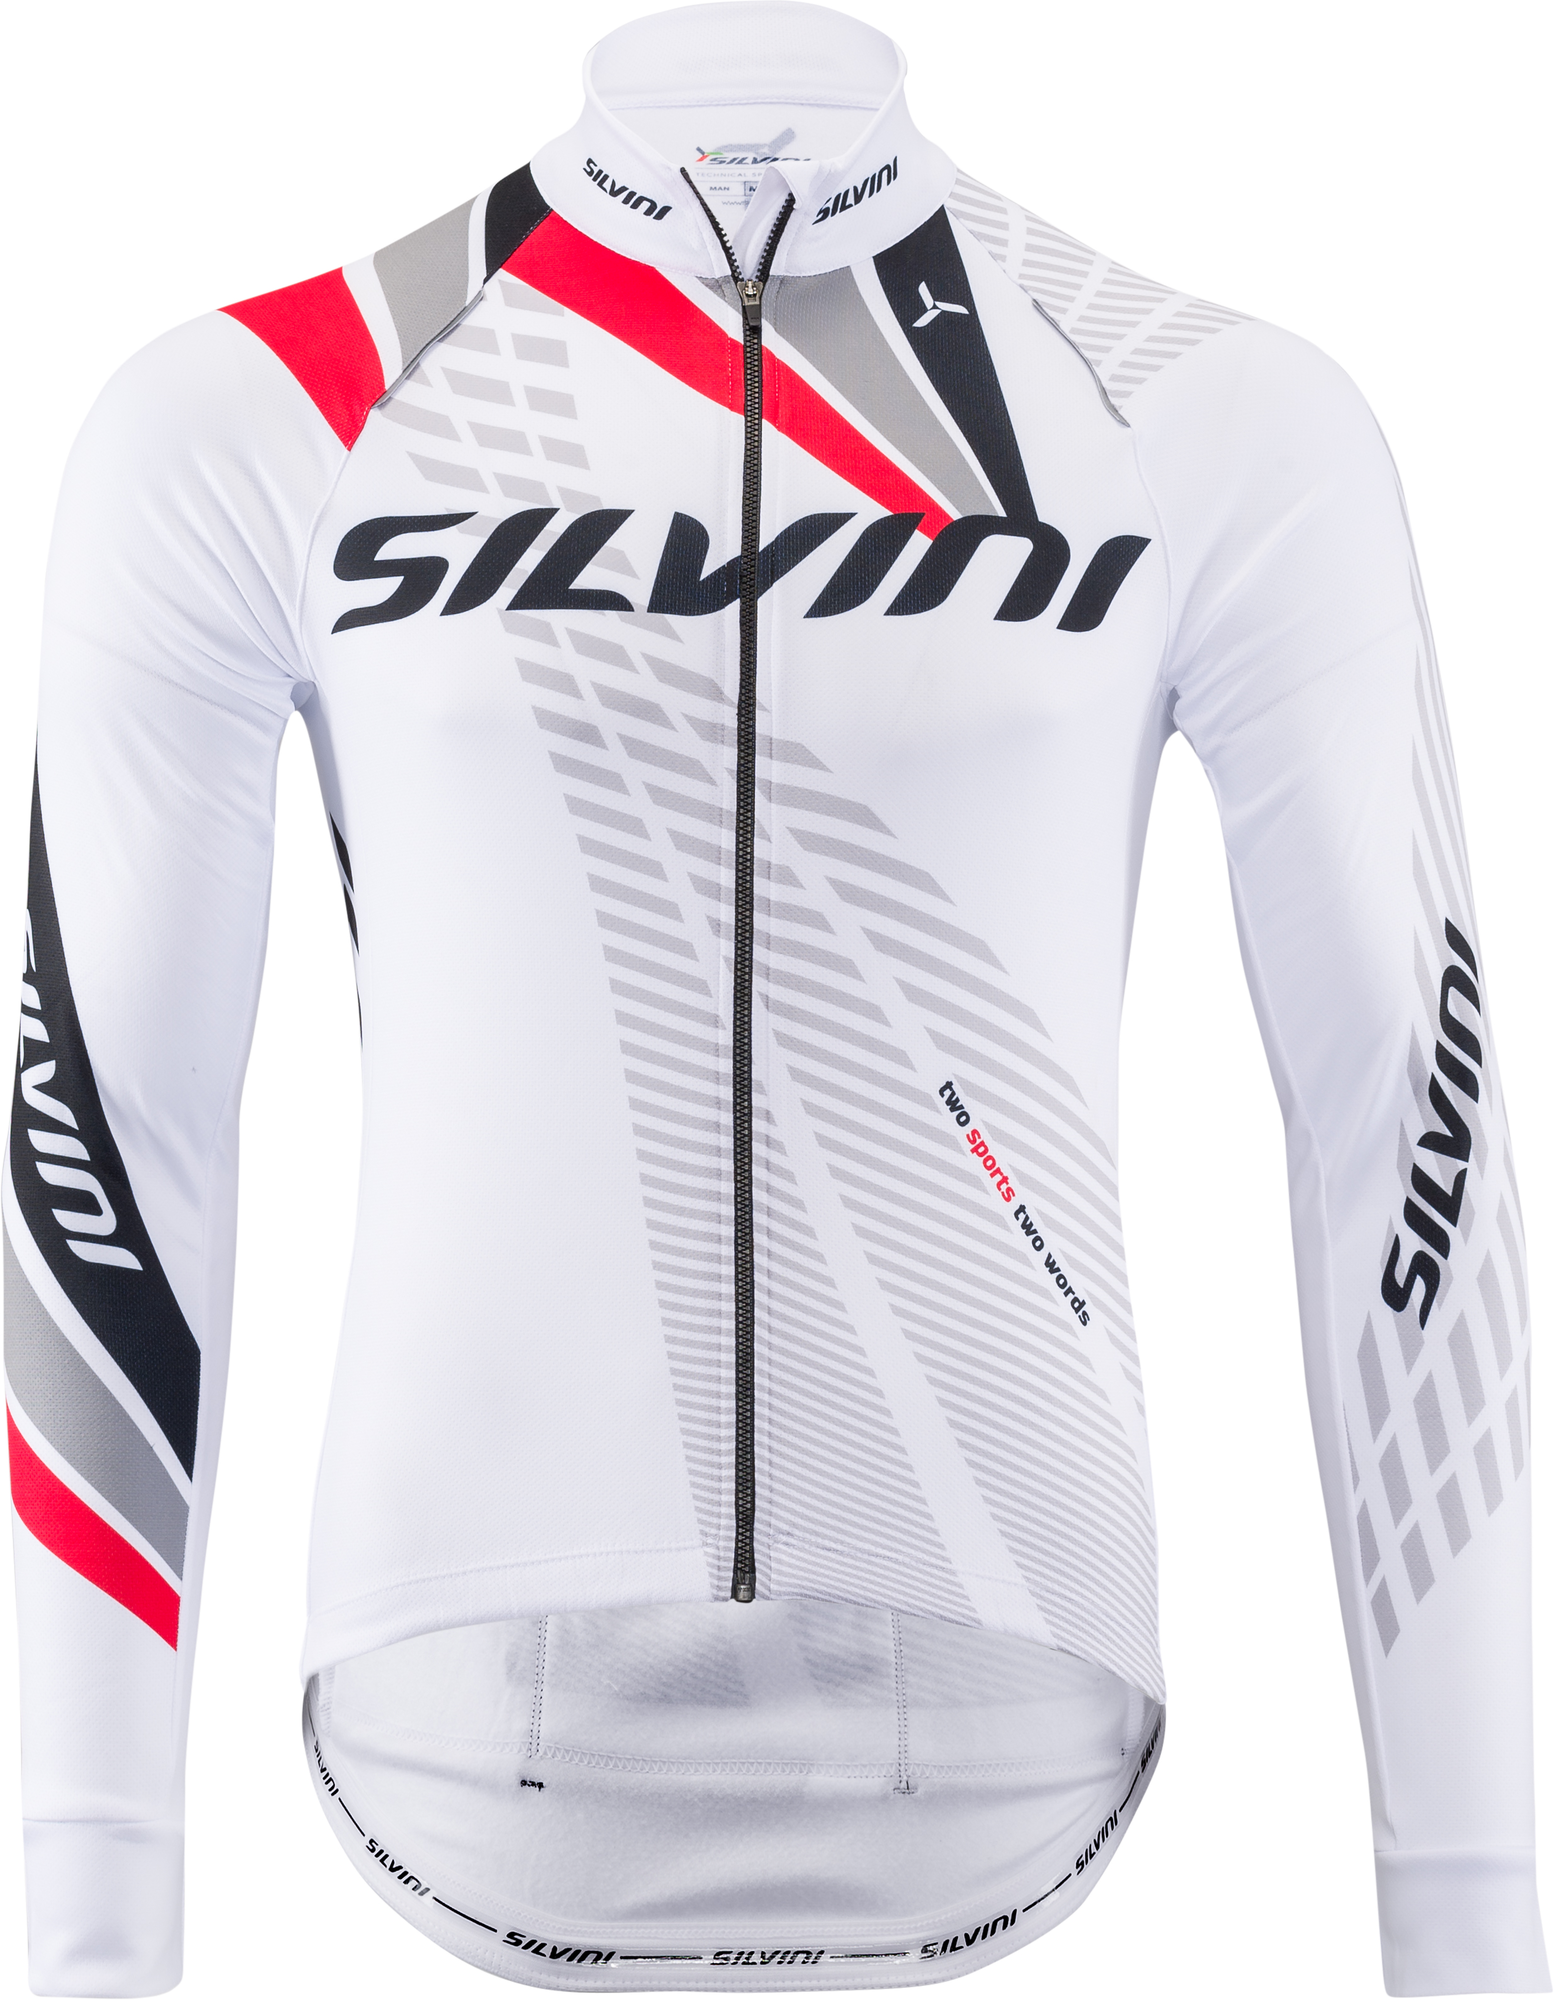 Pánský zateplený cyklistický dres Silvini Team MD1401 white-red